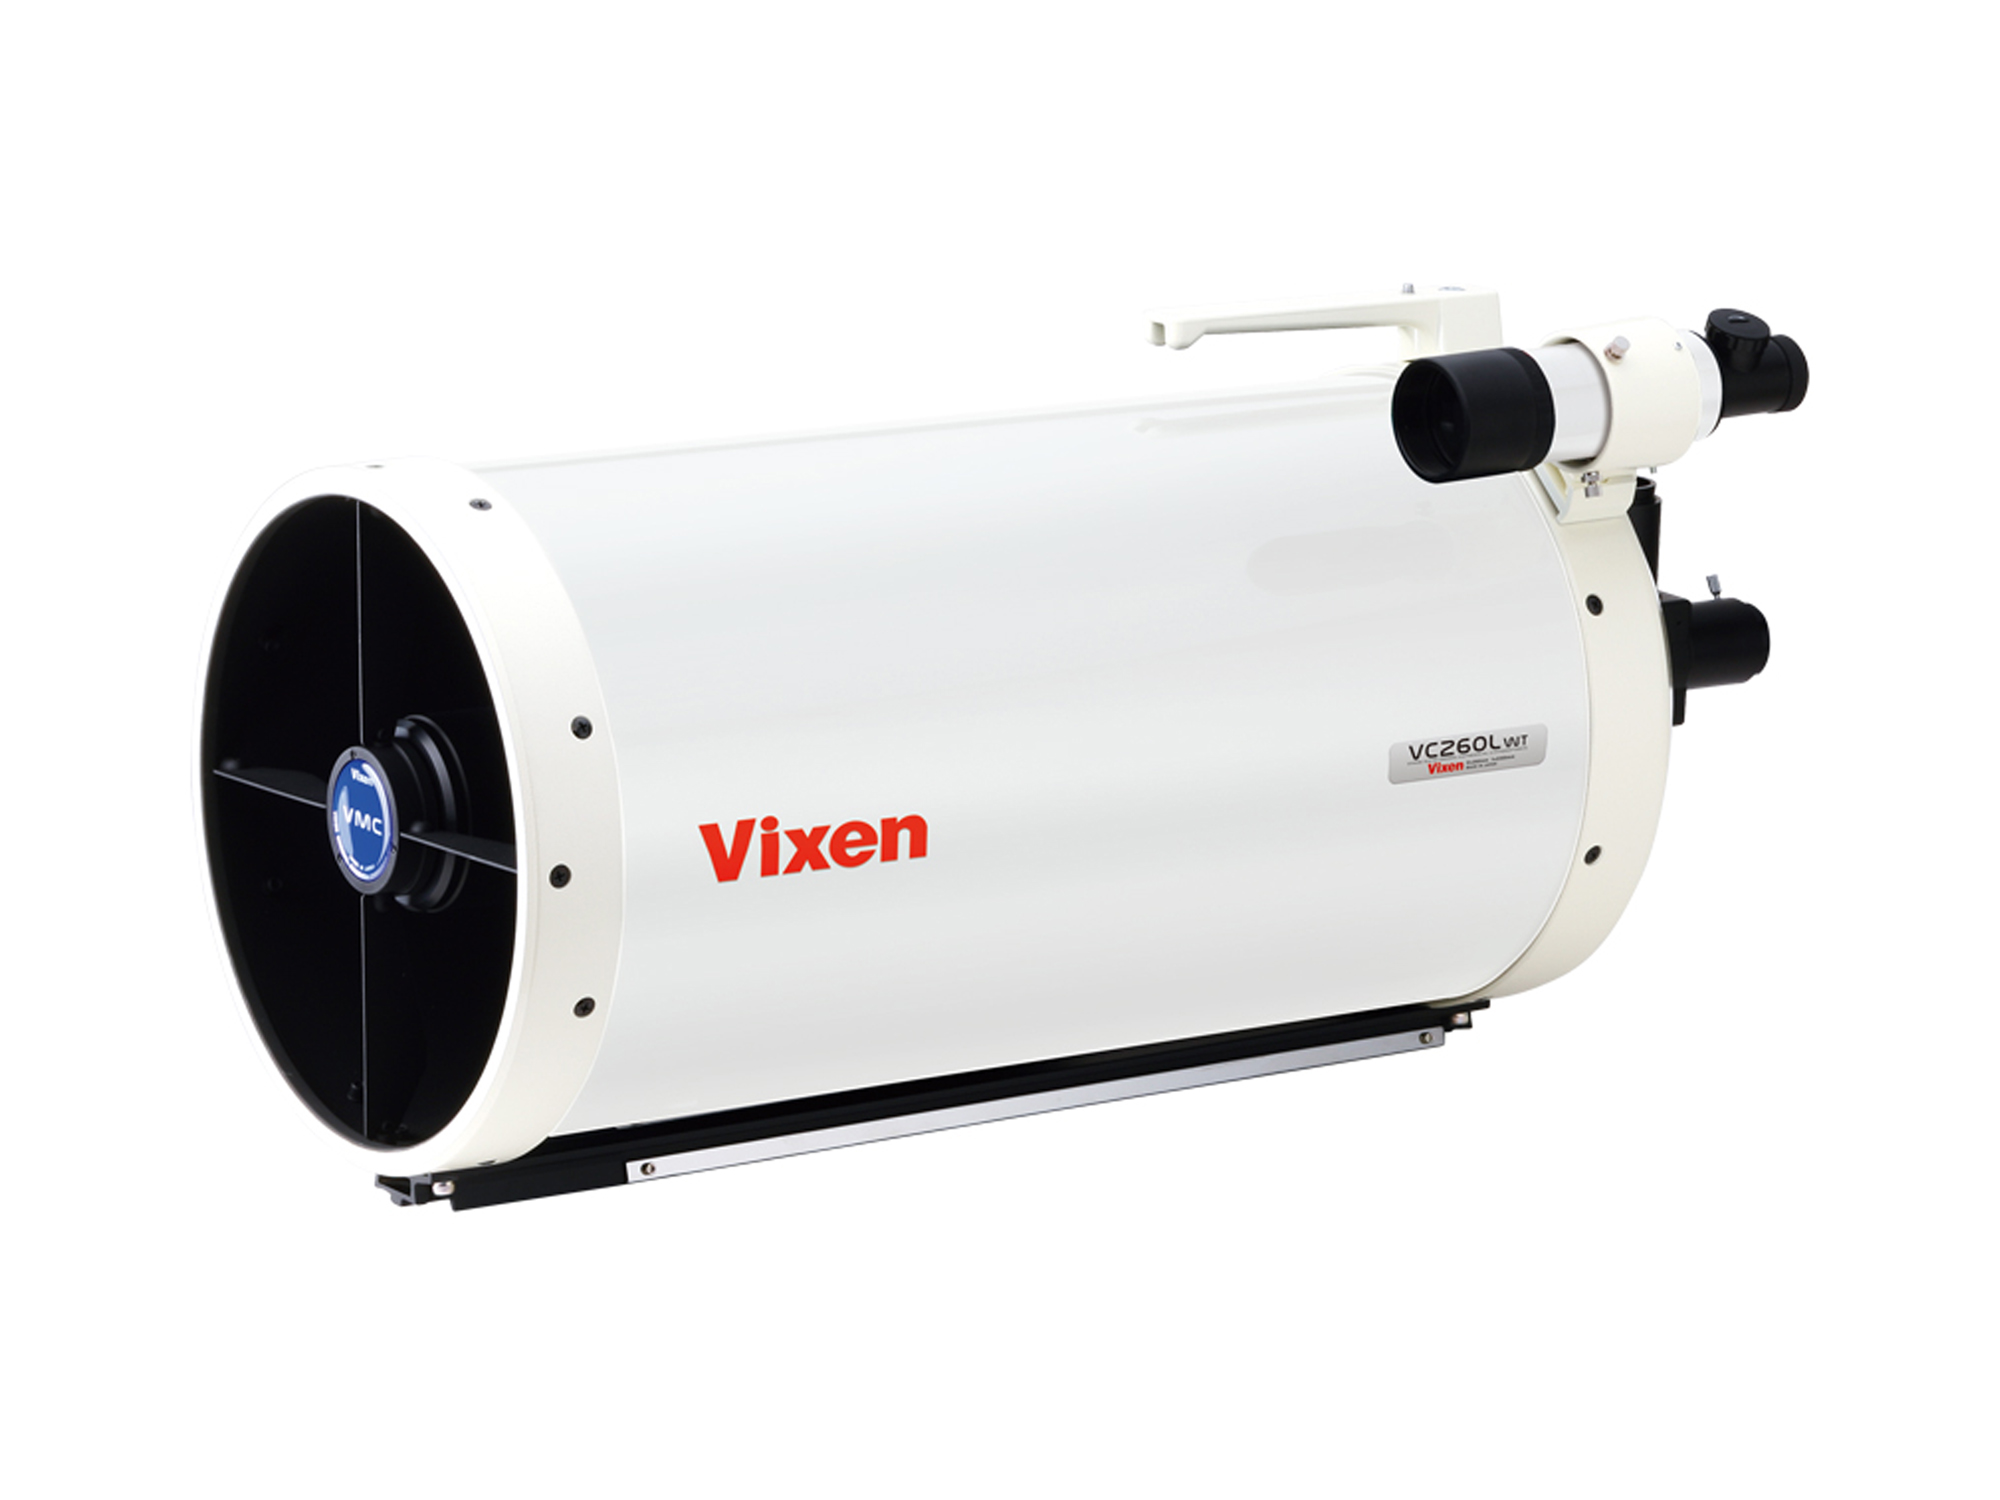 Vixen AXD2 Montierung mit VMC260L Maksutov-Cassegrain-Teleskop